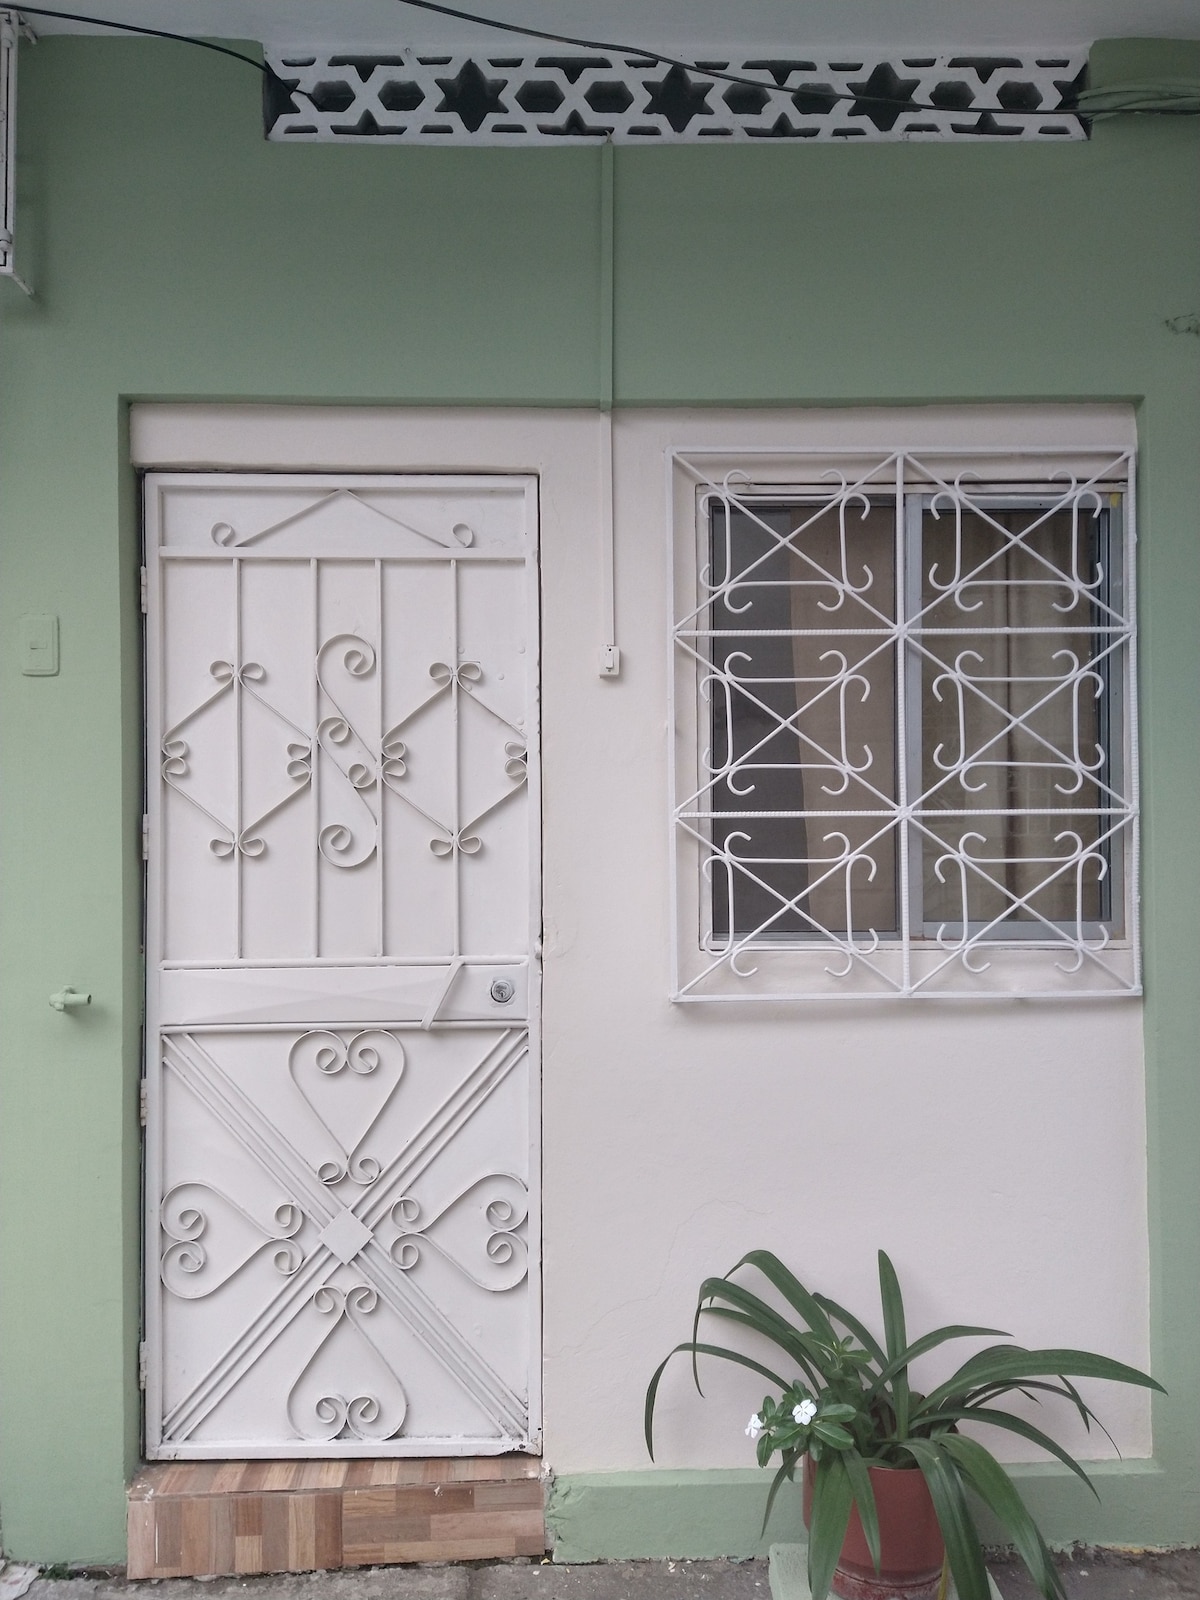 瓜亚基尔（ Guayaquil ）的舒适公寓。